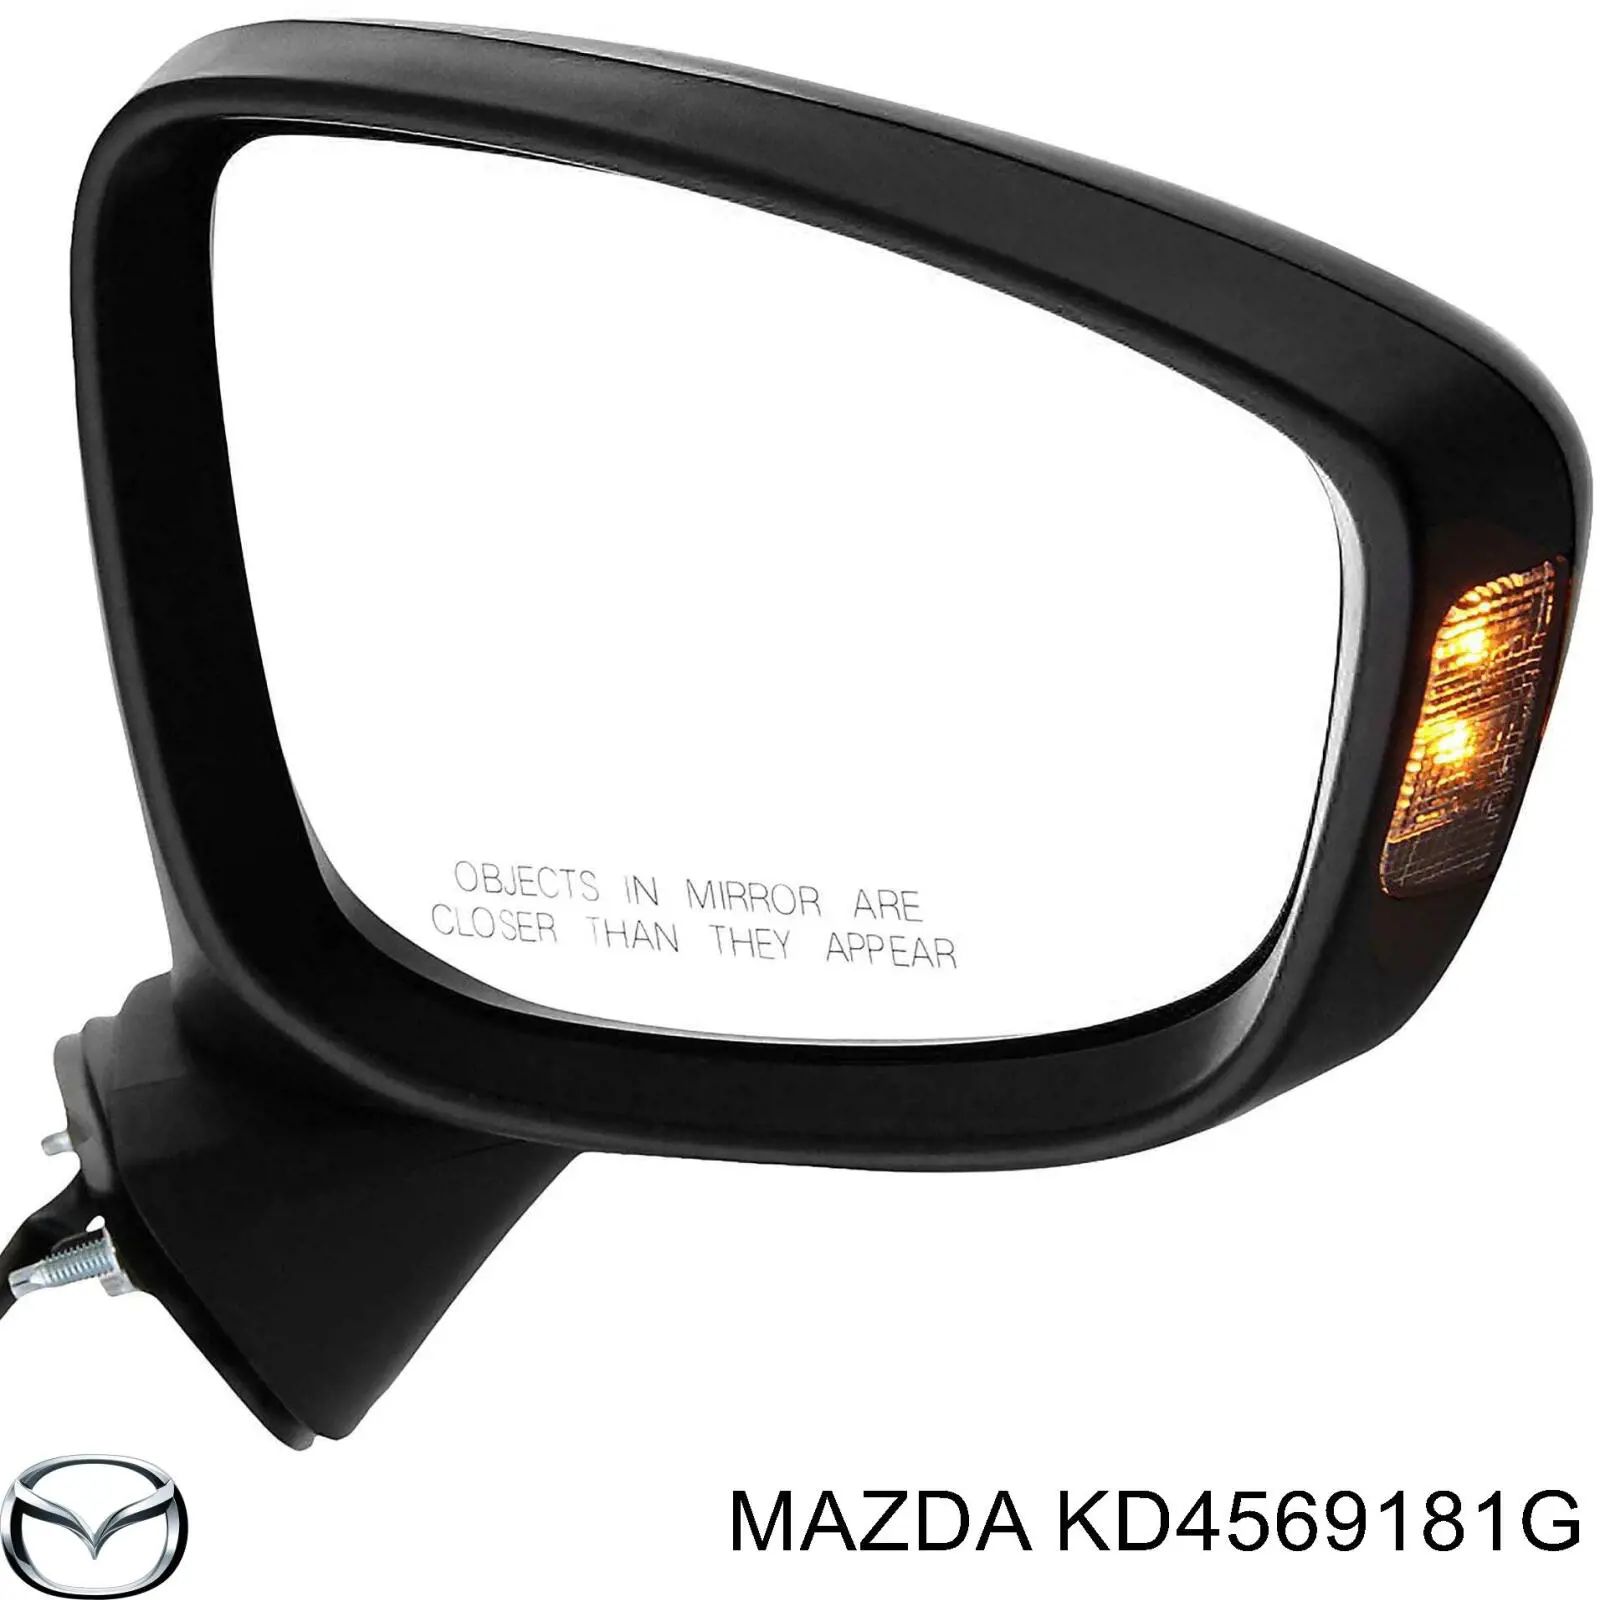 KD4569181G Mazda espejo retrovisor izquierdo